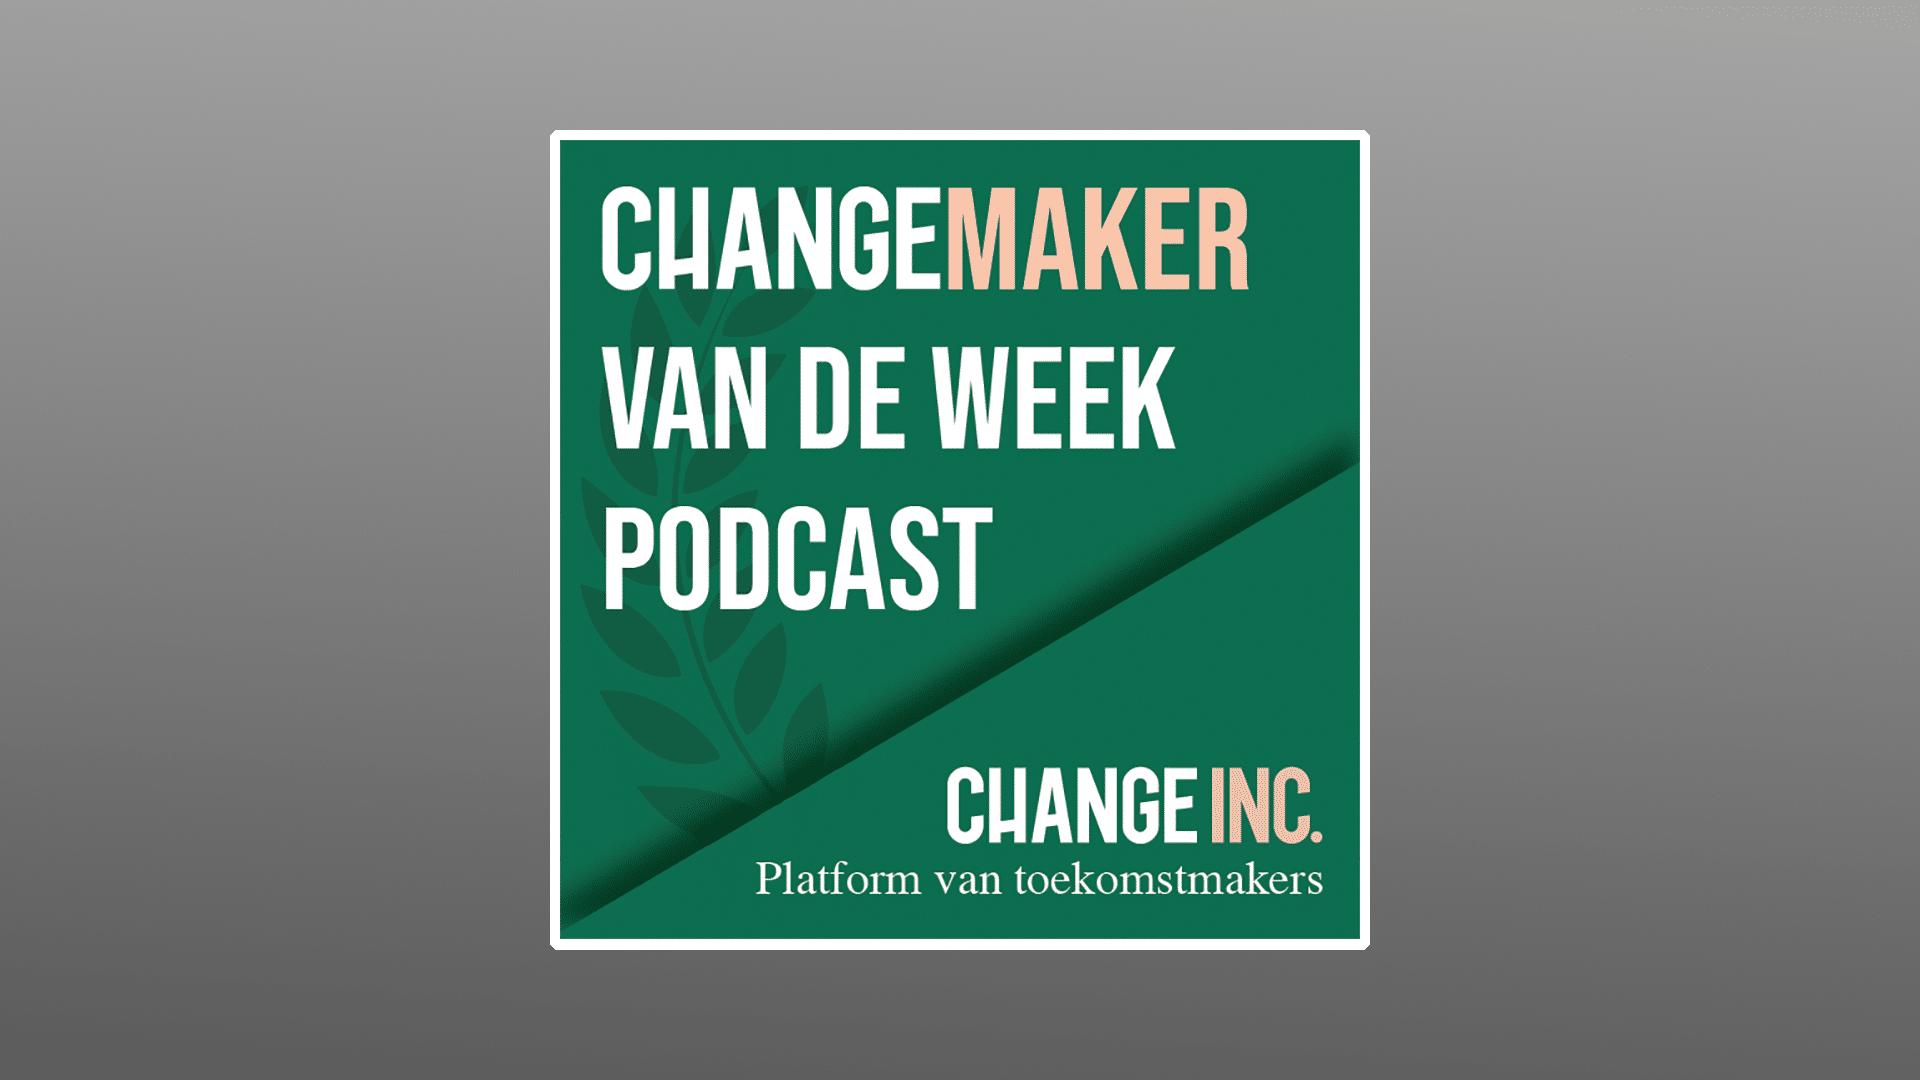 Changemaker van de week podcast